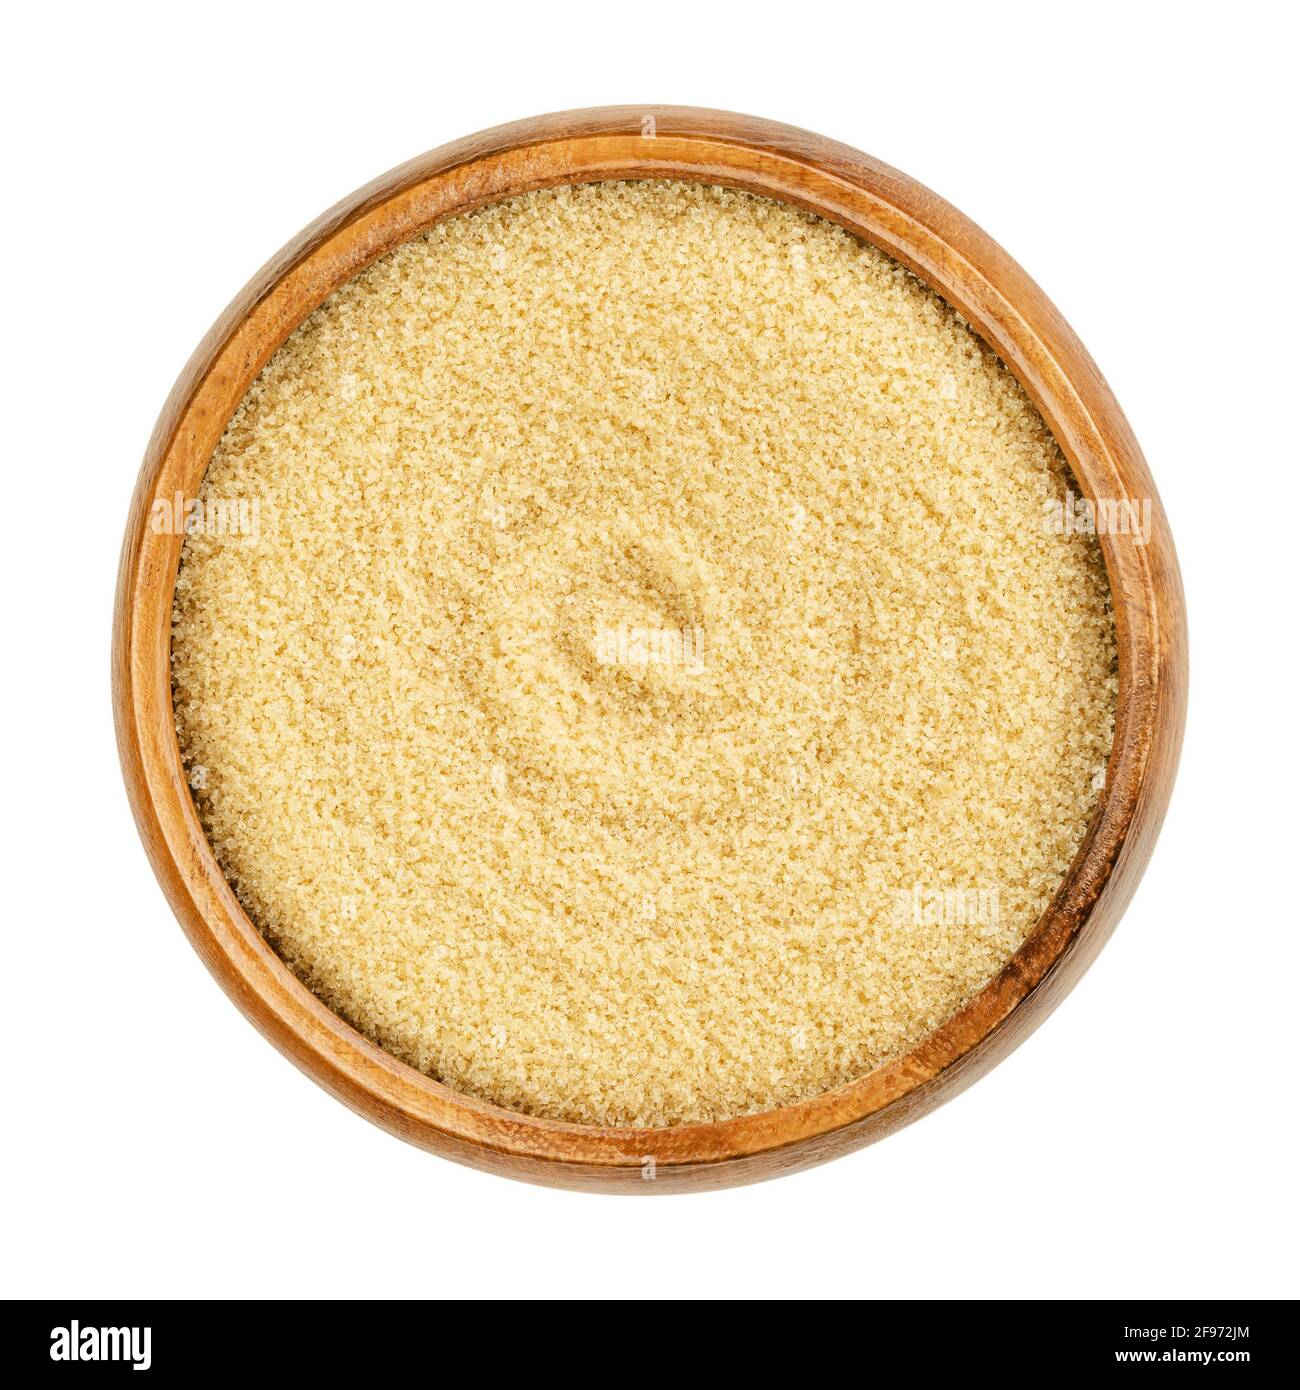 Demerara Zucker in einer Holzschüssel. Natürlicher Rohzucker, ein Sucrose-Zucker-Produkt mit ausgeprägter gelb-brauner Farbe aufgrund von Melasse. Stockfoto